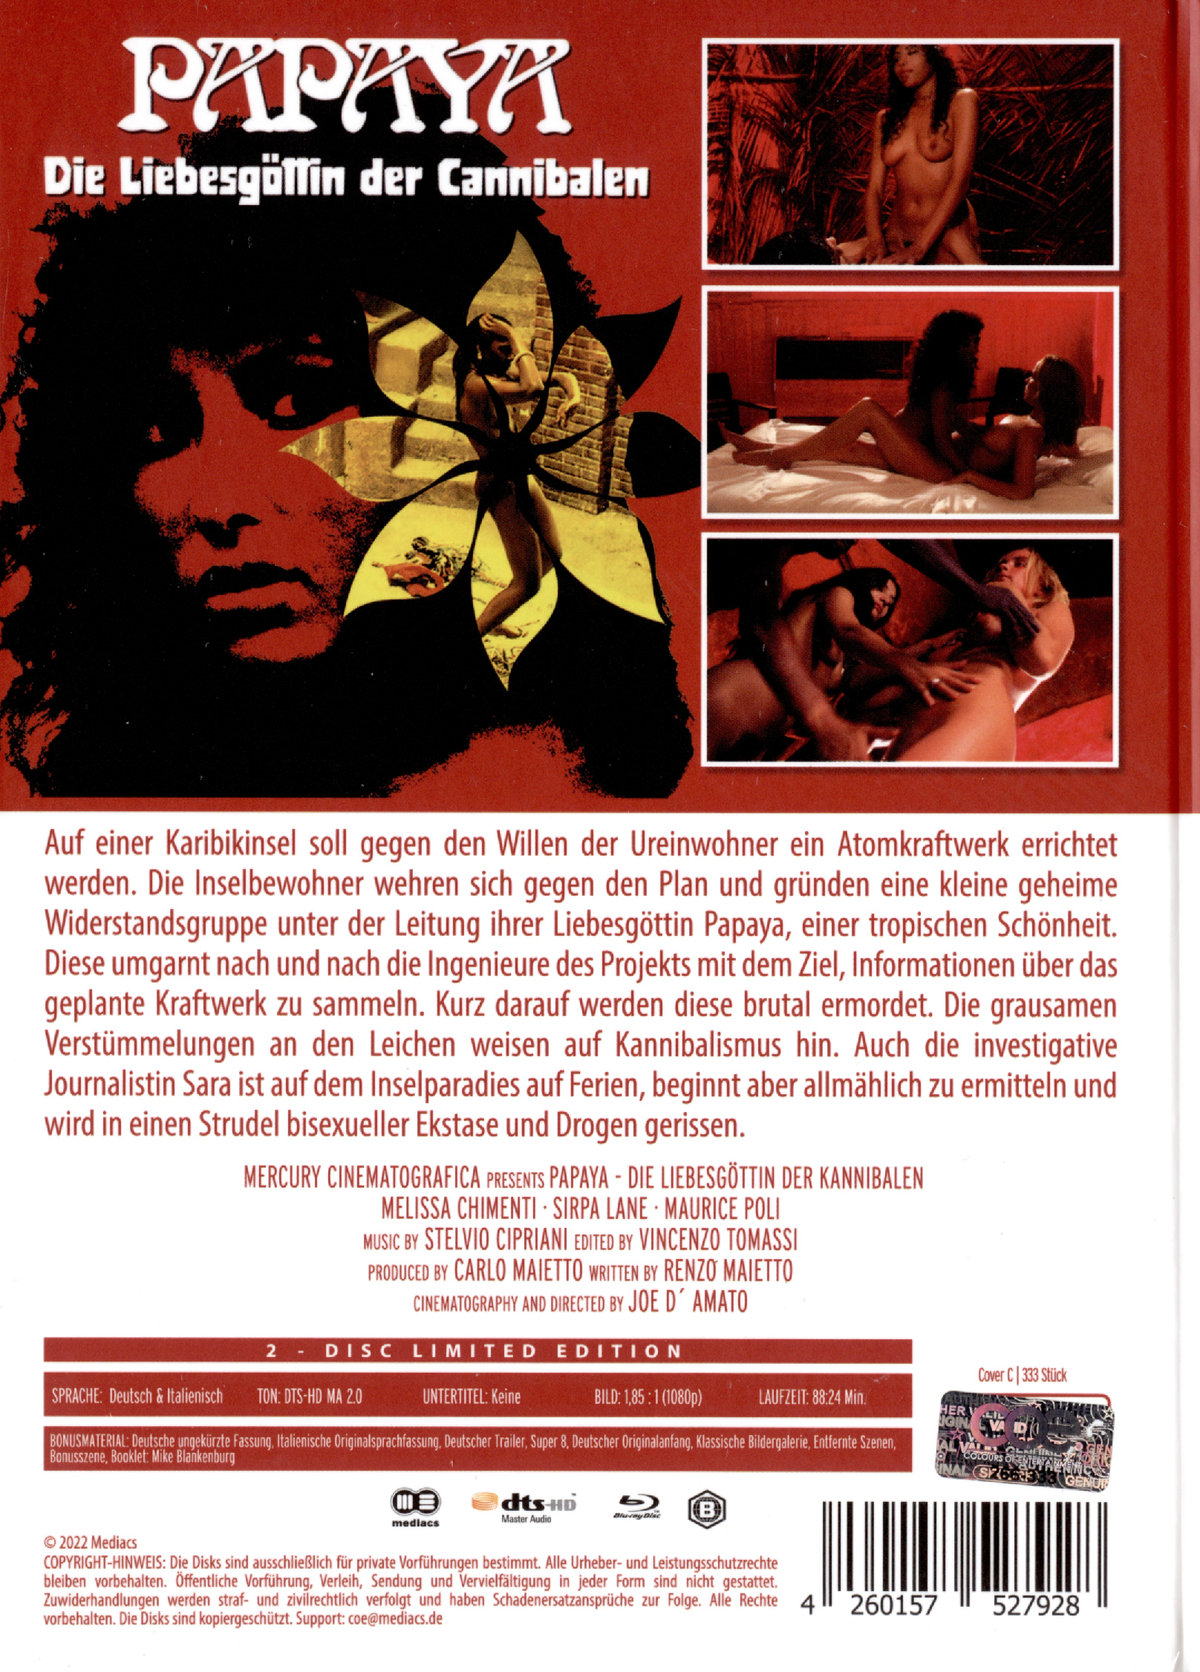 Papaya - Die Liebesgöttin der Cannibalen - Uncut Mediabook Edition (DVD+blu-ray) (C)